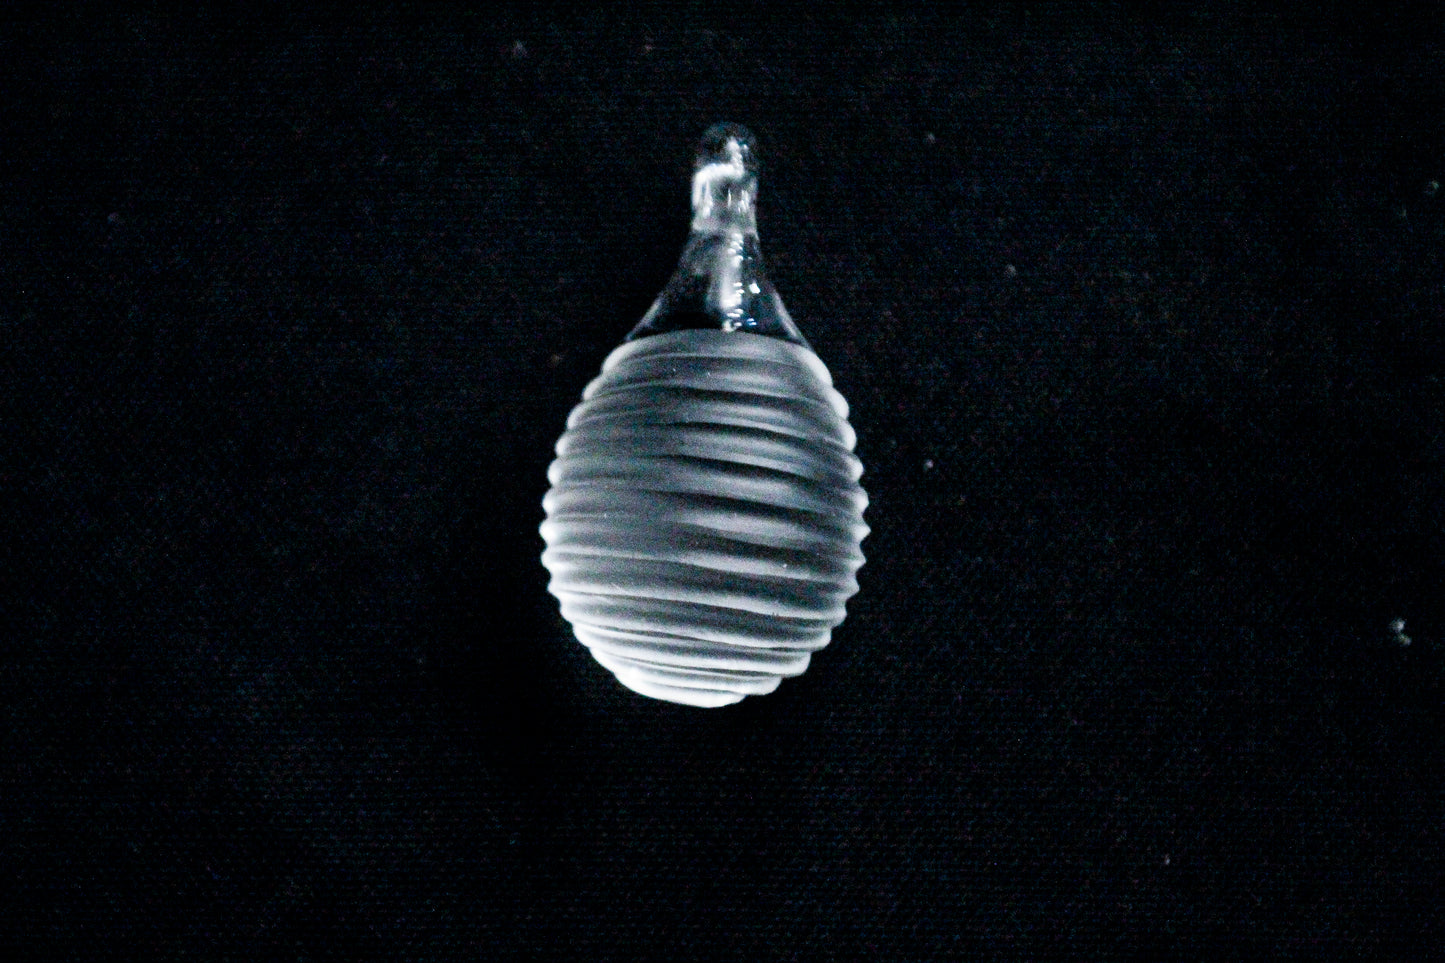 Gorilla Glass Pendants/Necklaces - Simple Stripes